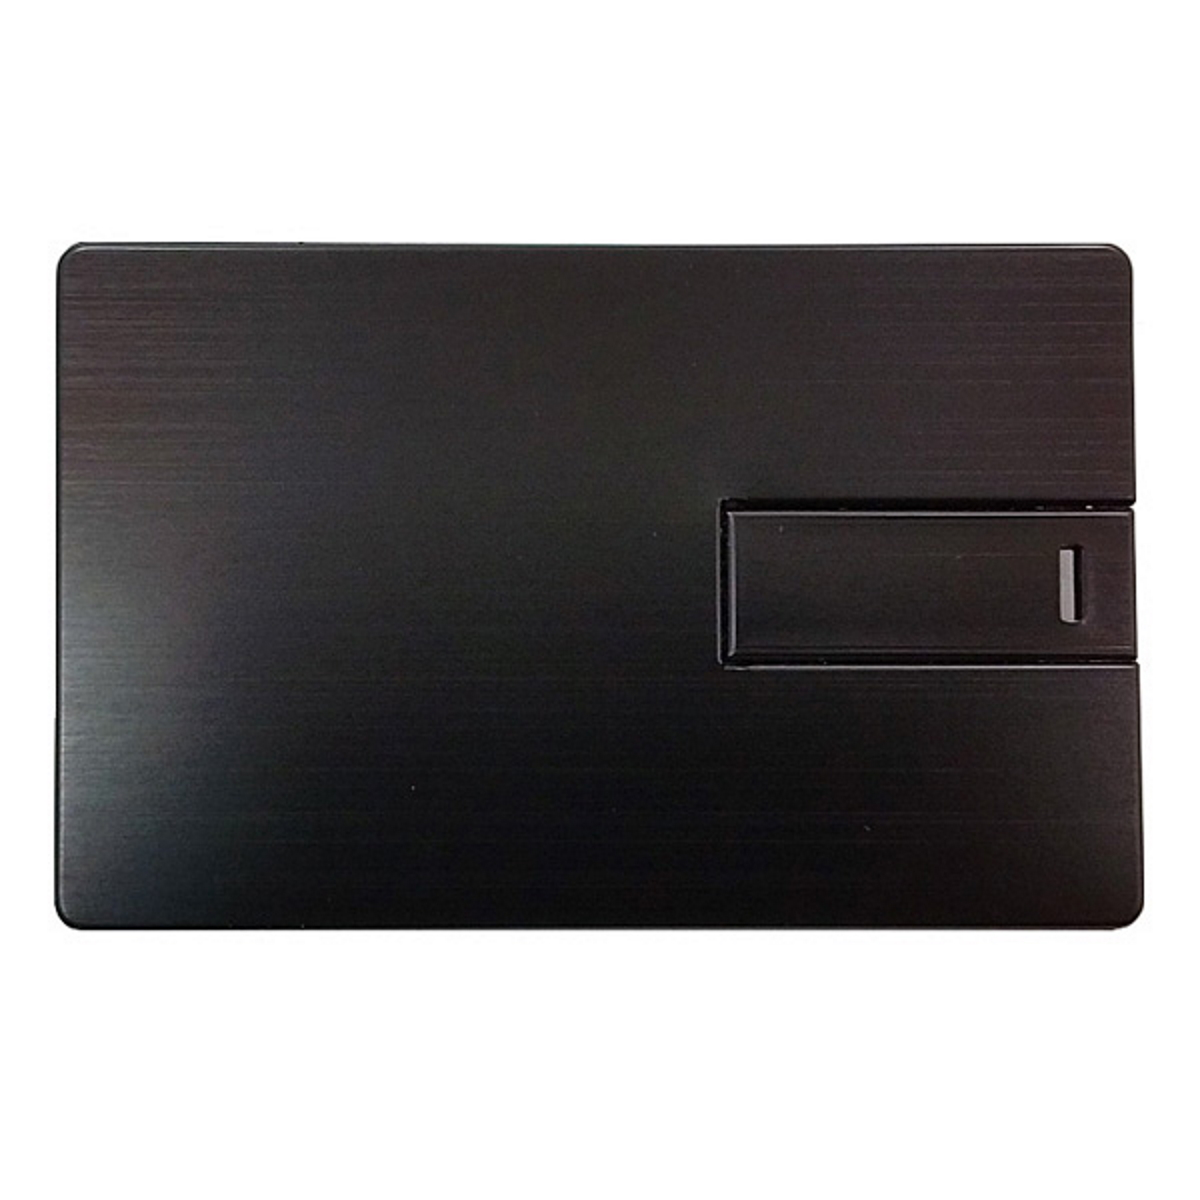 USB GERMANY ® Metall-Kreditkarte USB-Stick GB) 8 (Schwarz